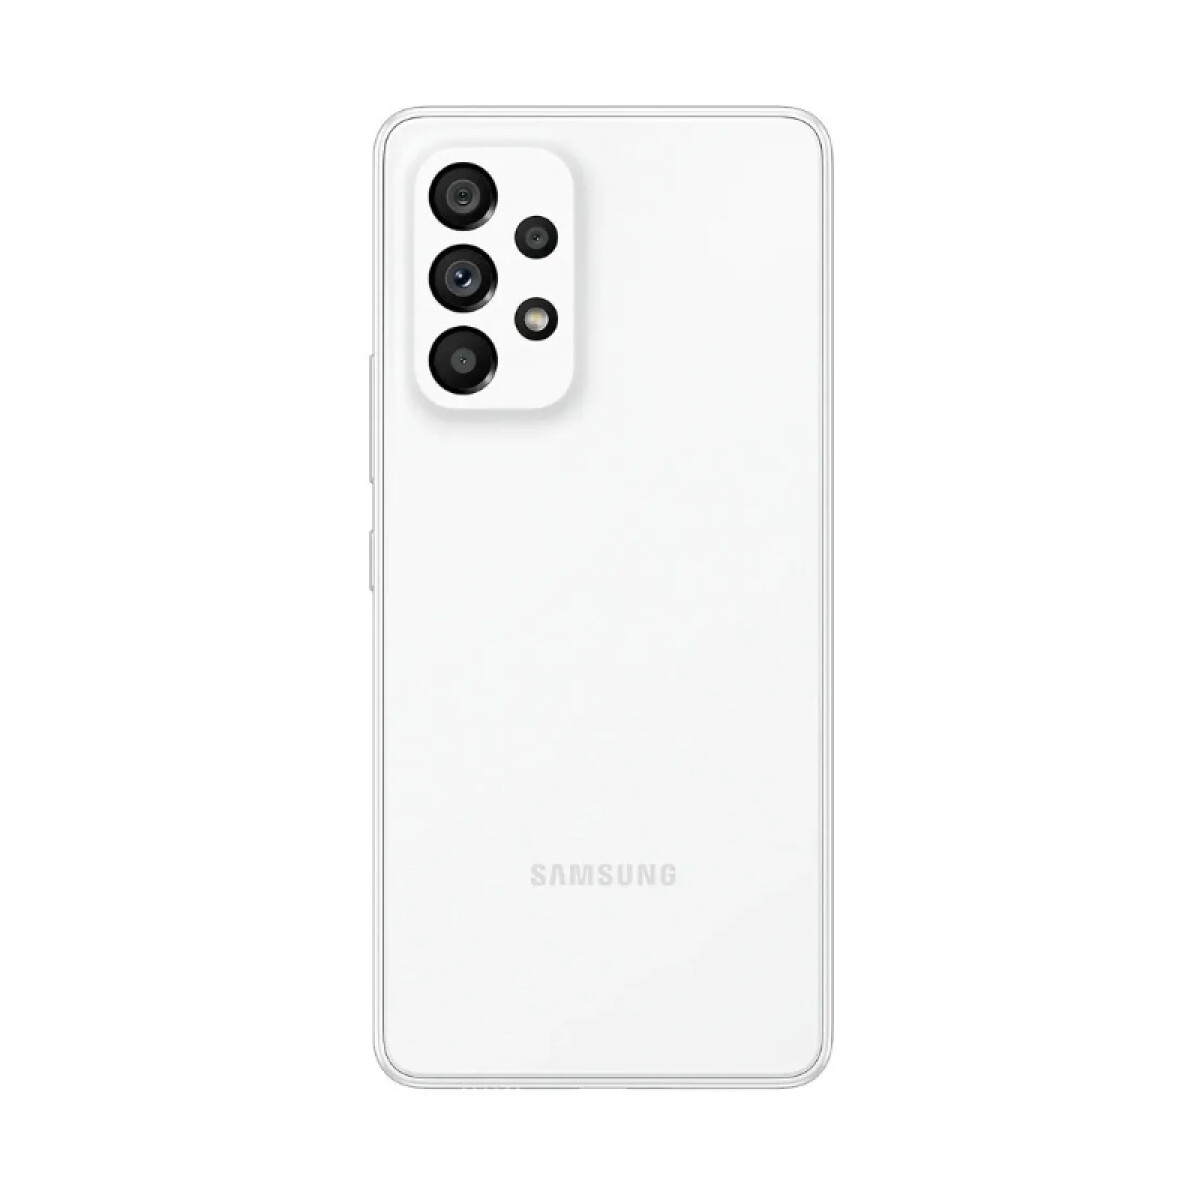 Samsung galaxy a33 5g 128gb / 6gb dual sim Blanco